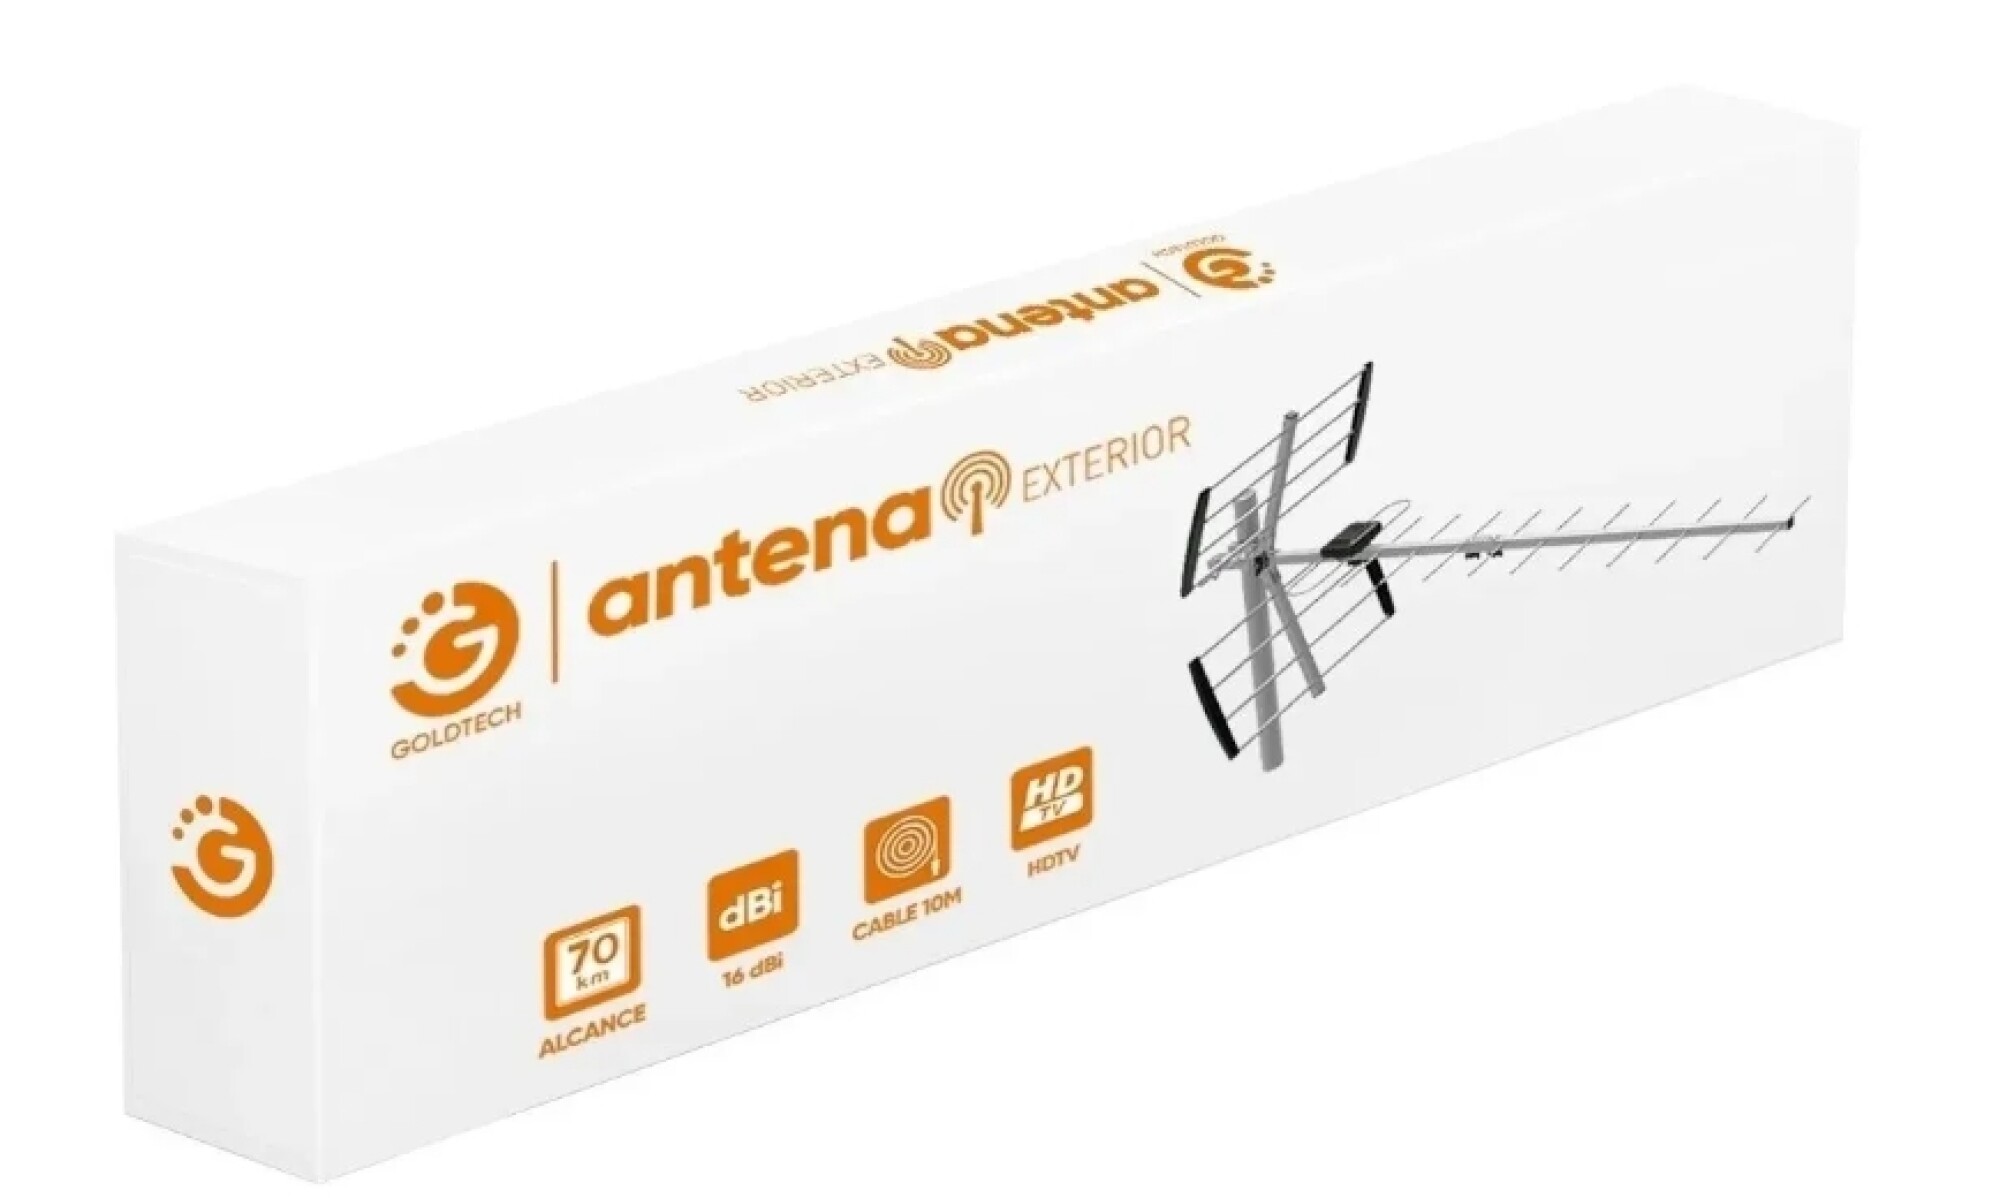 Antena Tv Magnetica Interior Goldtech 1.5m — MdeOfertas